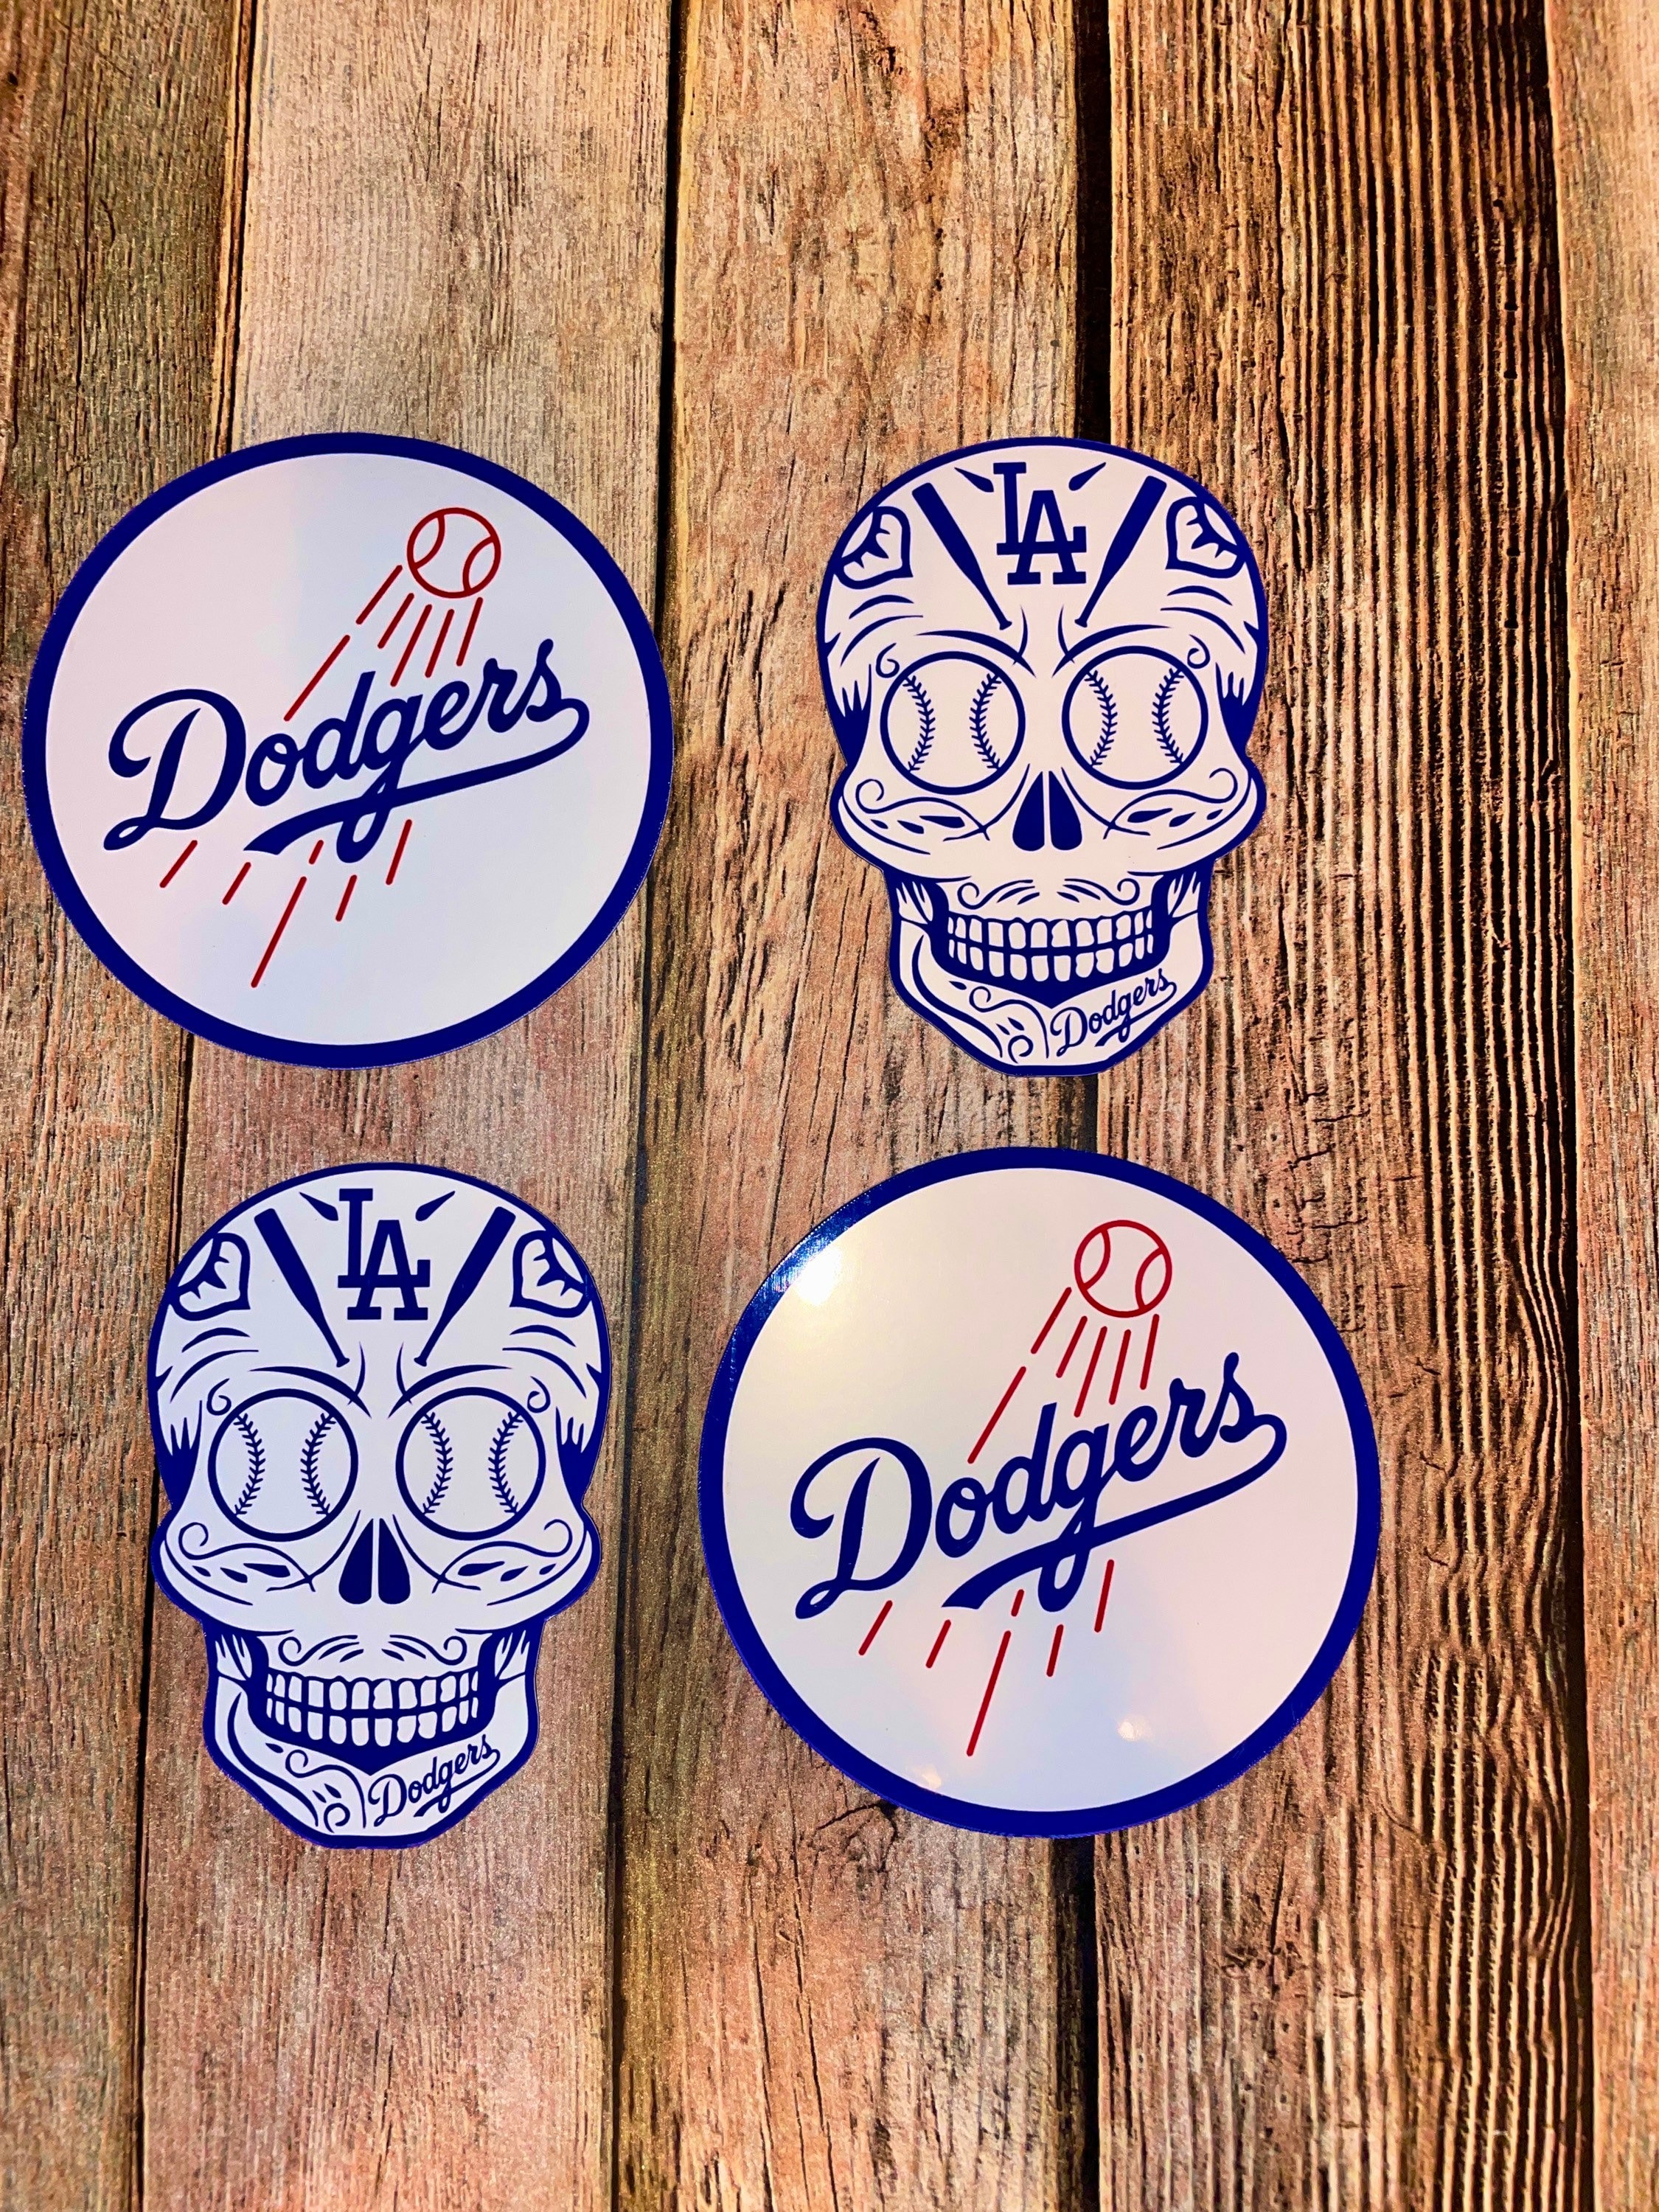 Skull Los Angeles Dodgers Dia De Los Muertos Skull Men'S T Shirt –  BlacksWhite